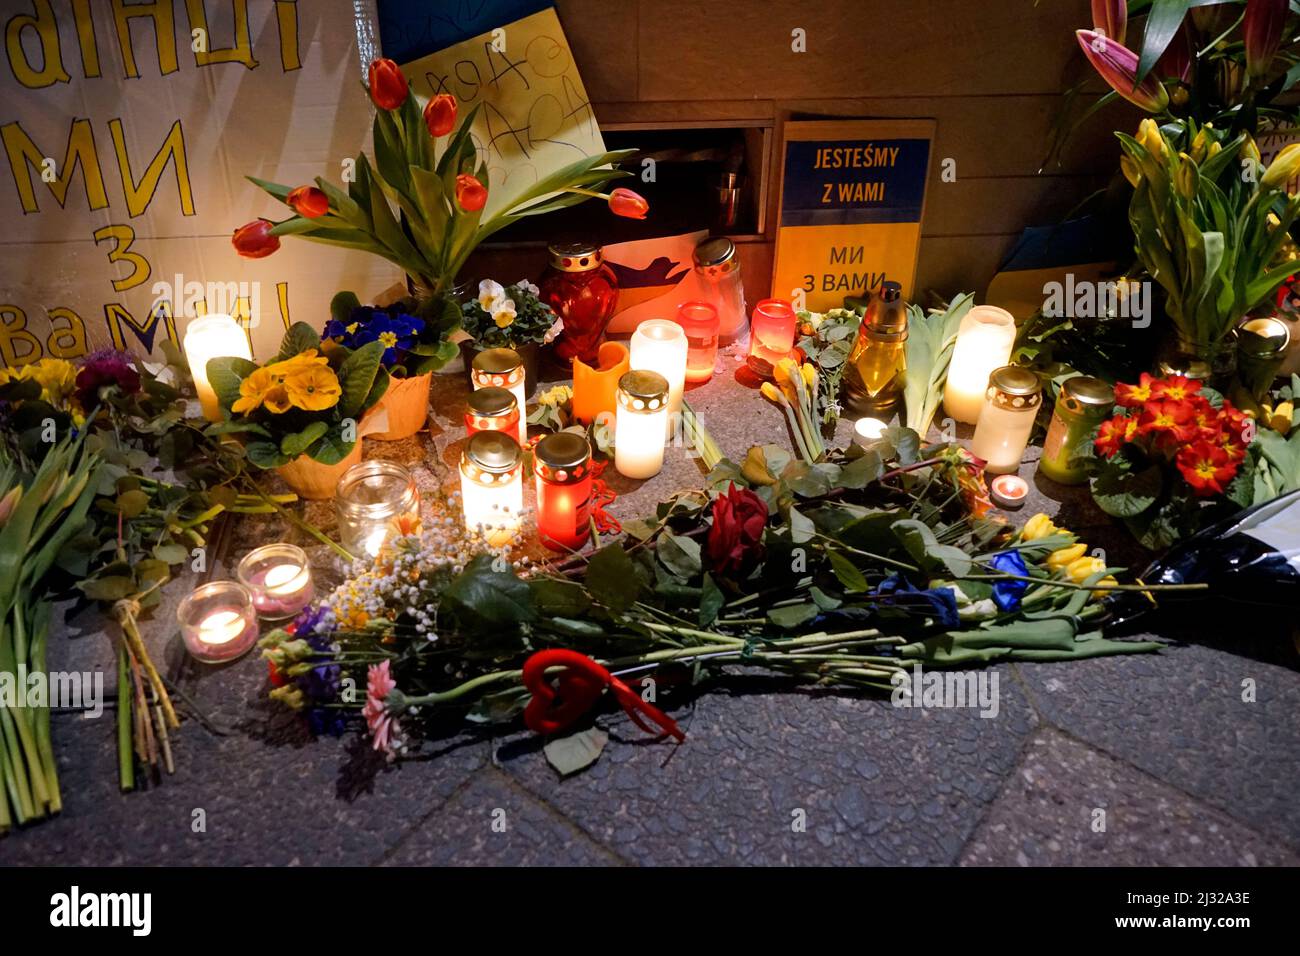 Blumen und Kerzen als Erinnerung an die getoeteten Ukrainer nach dem Ueberfall des Landes durch Russland vor der ukrainischen Botschaft/ flowers and c Foto de stock